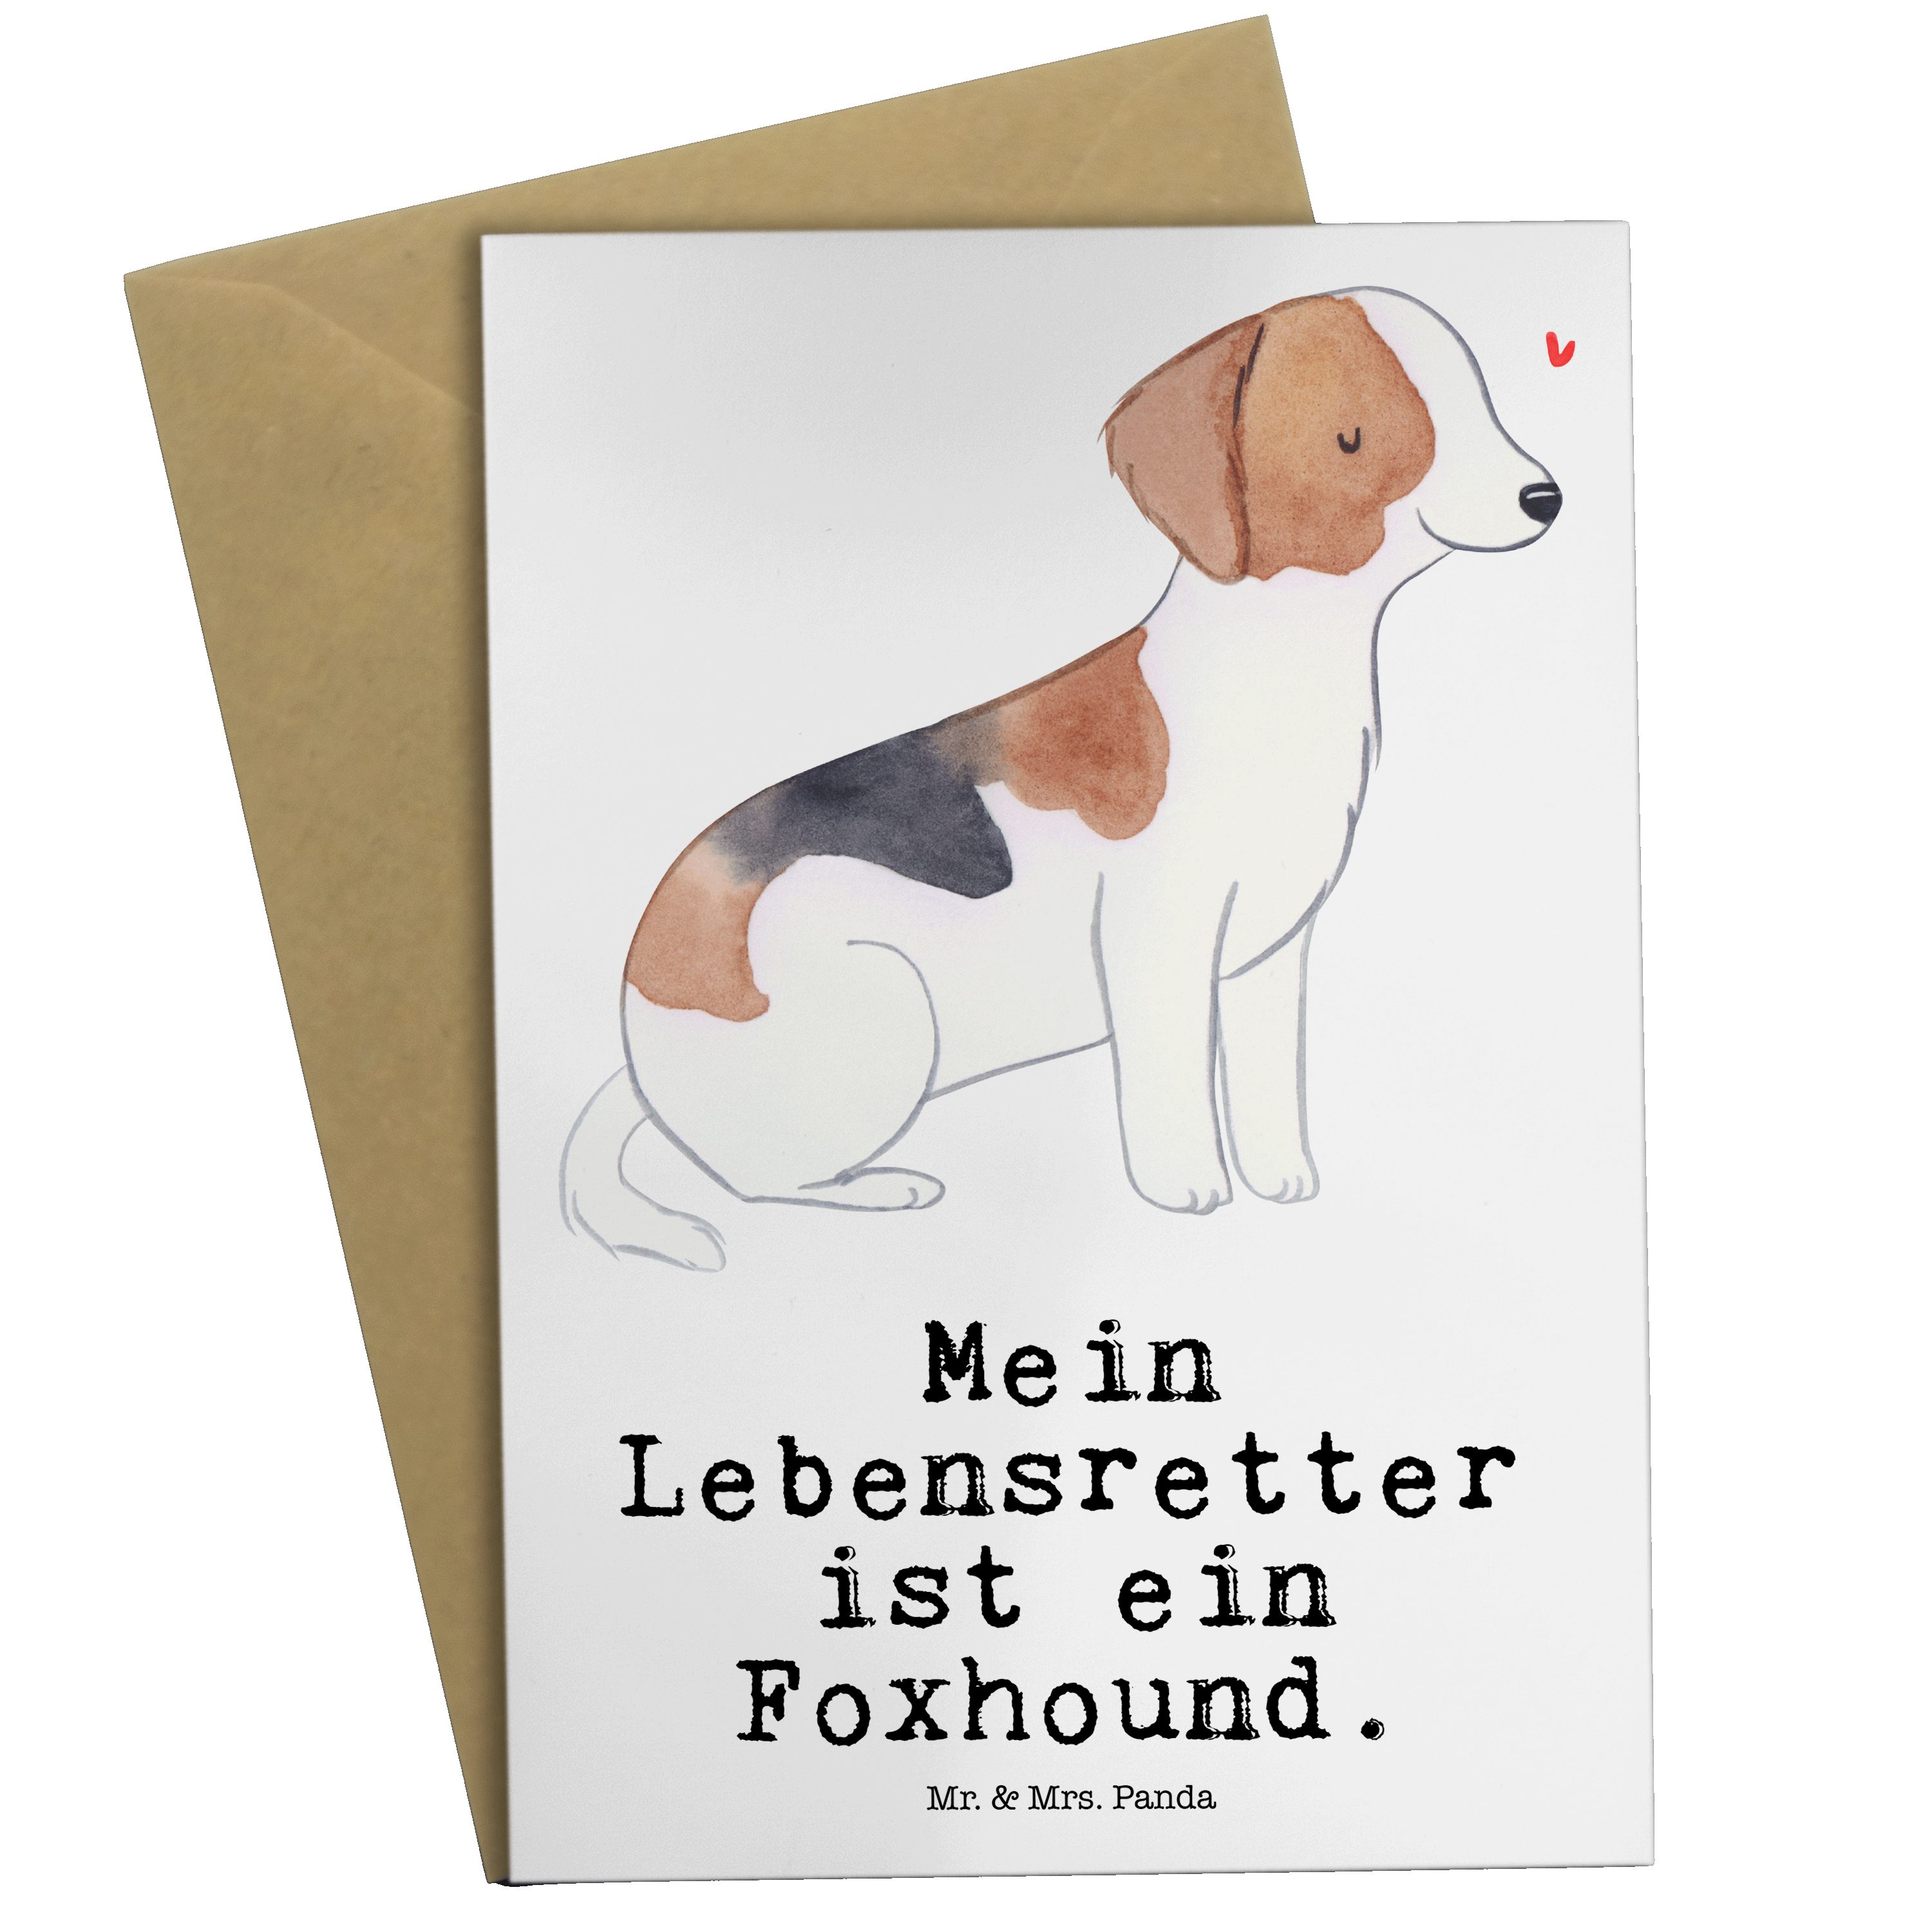 Mr. & Mrs. Panda Grußkarte Foxhound Lebensretter - Weiß - Geschenk, Hochzeitskarte, Jagdhund, Ei